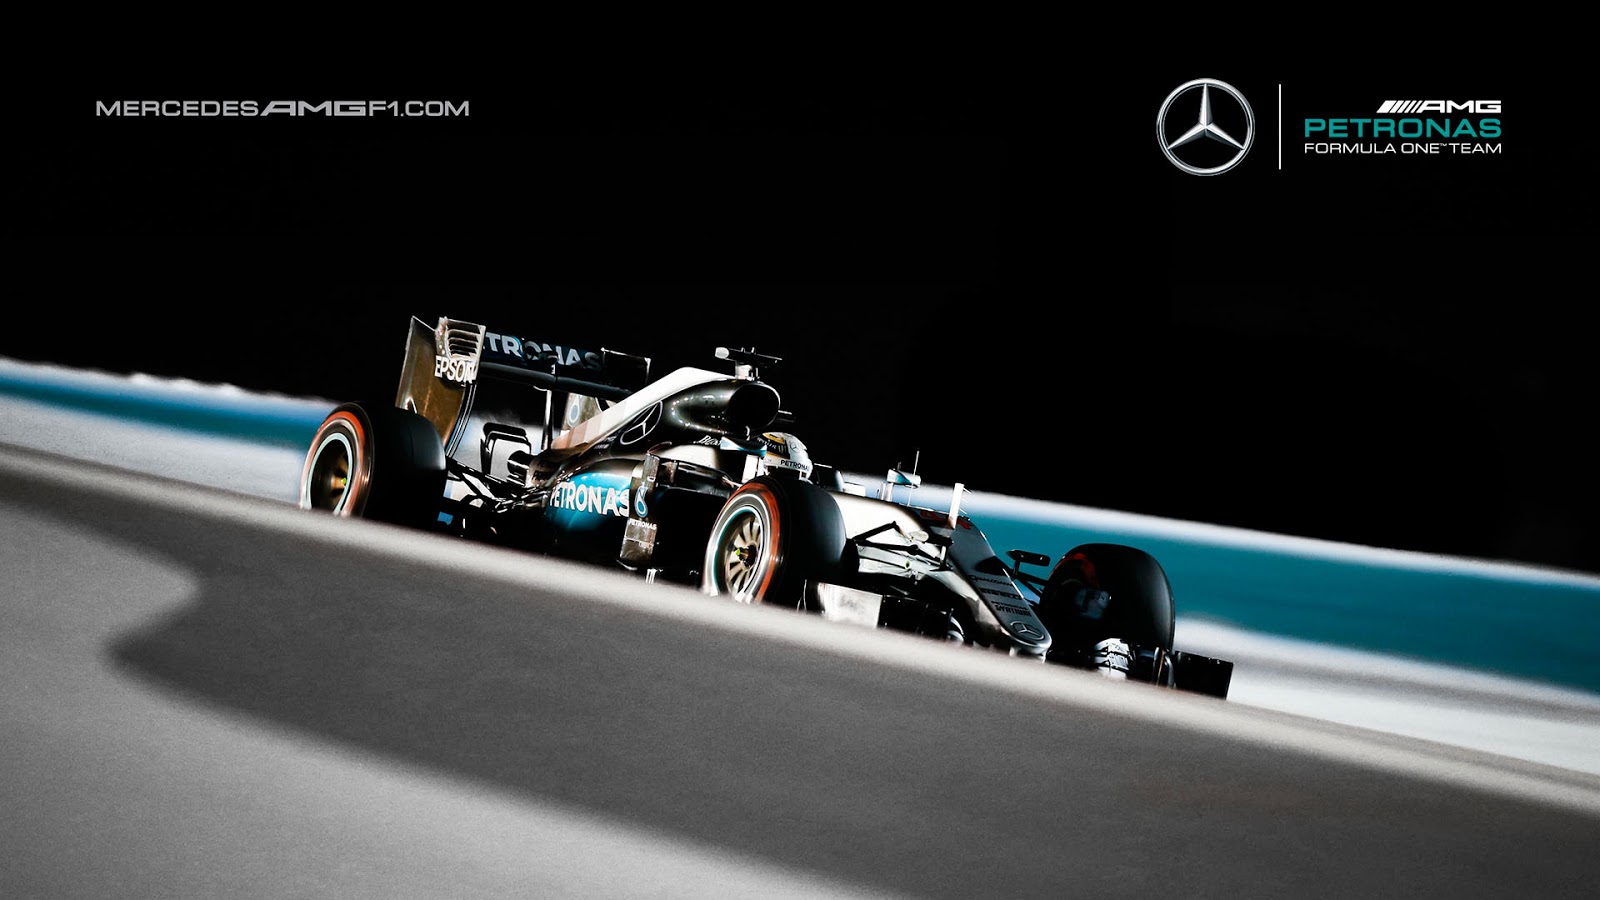 Mercedes F1 Wallpaper Hd - santaretpa